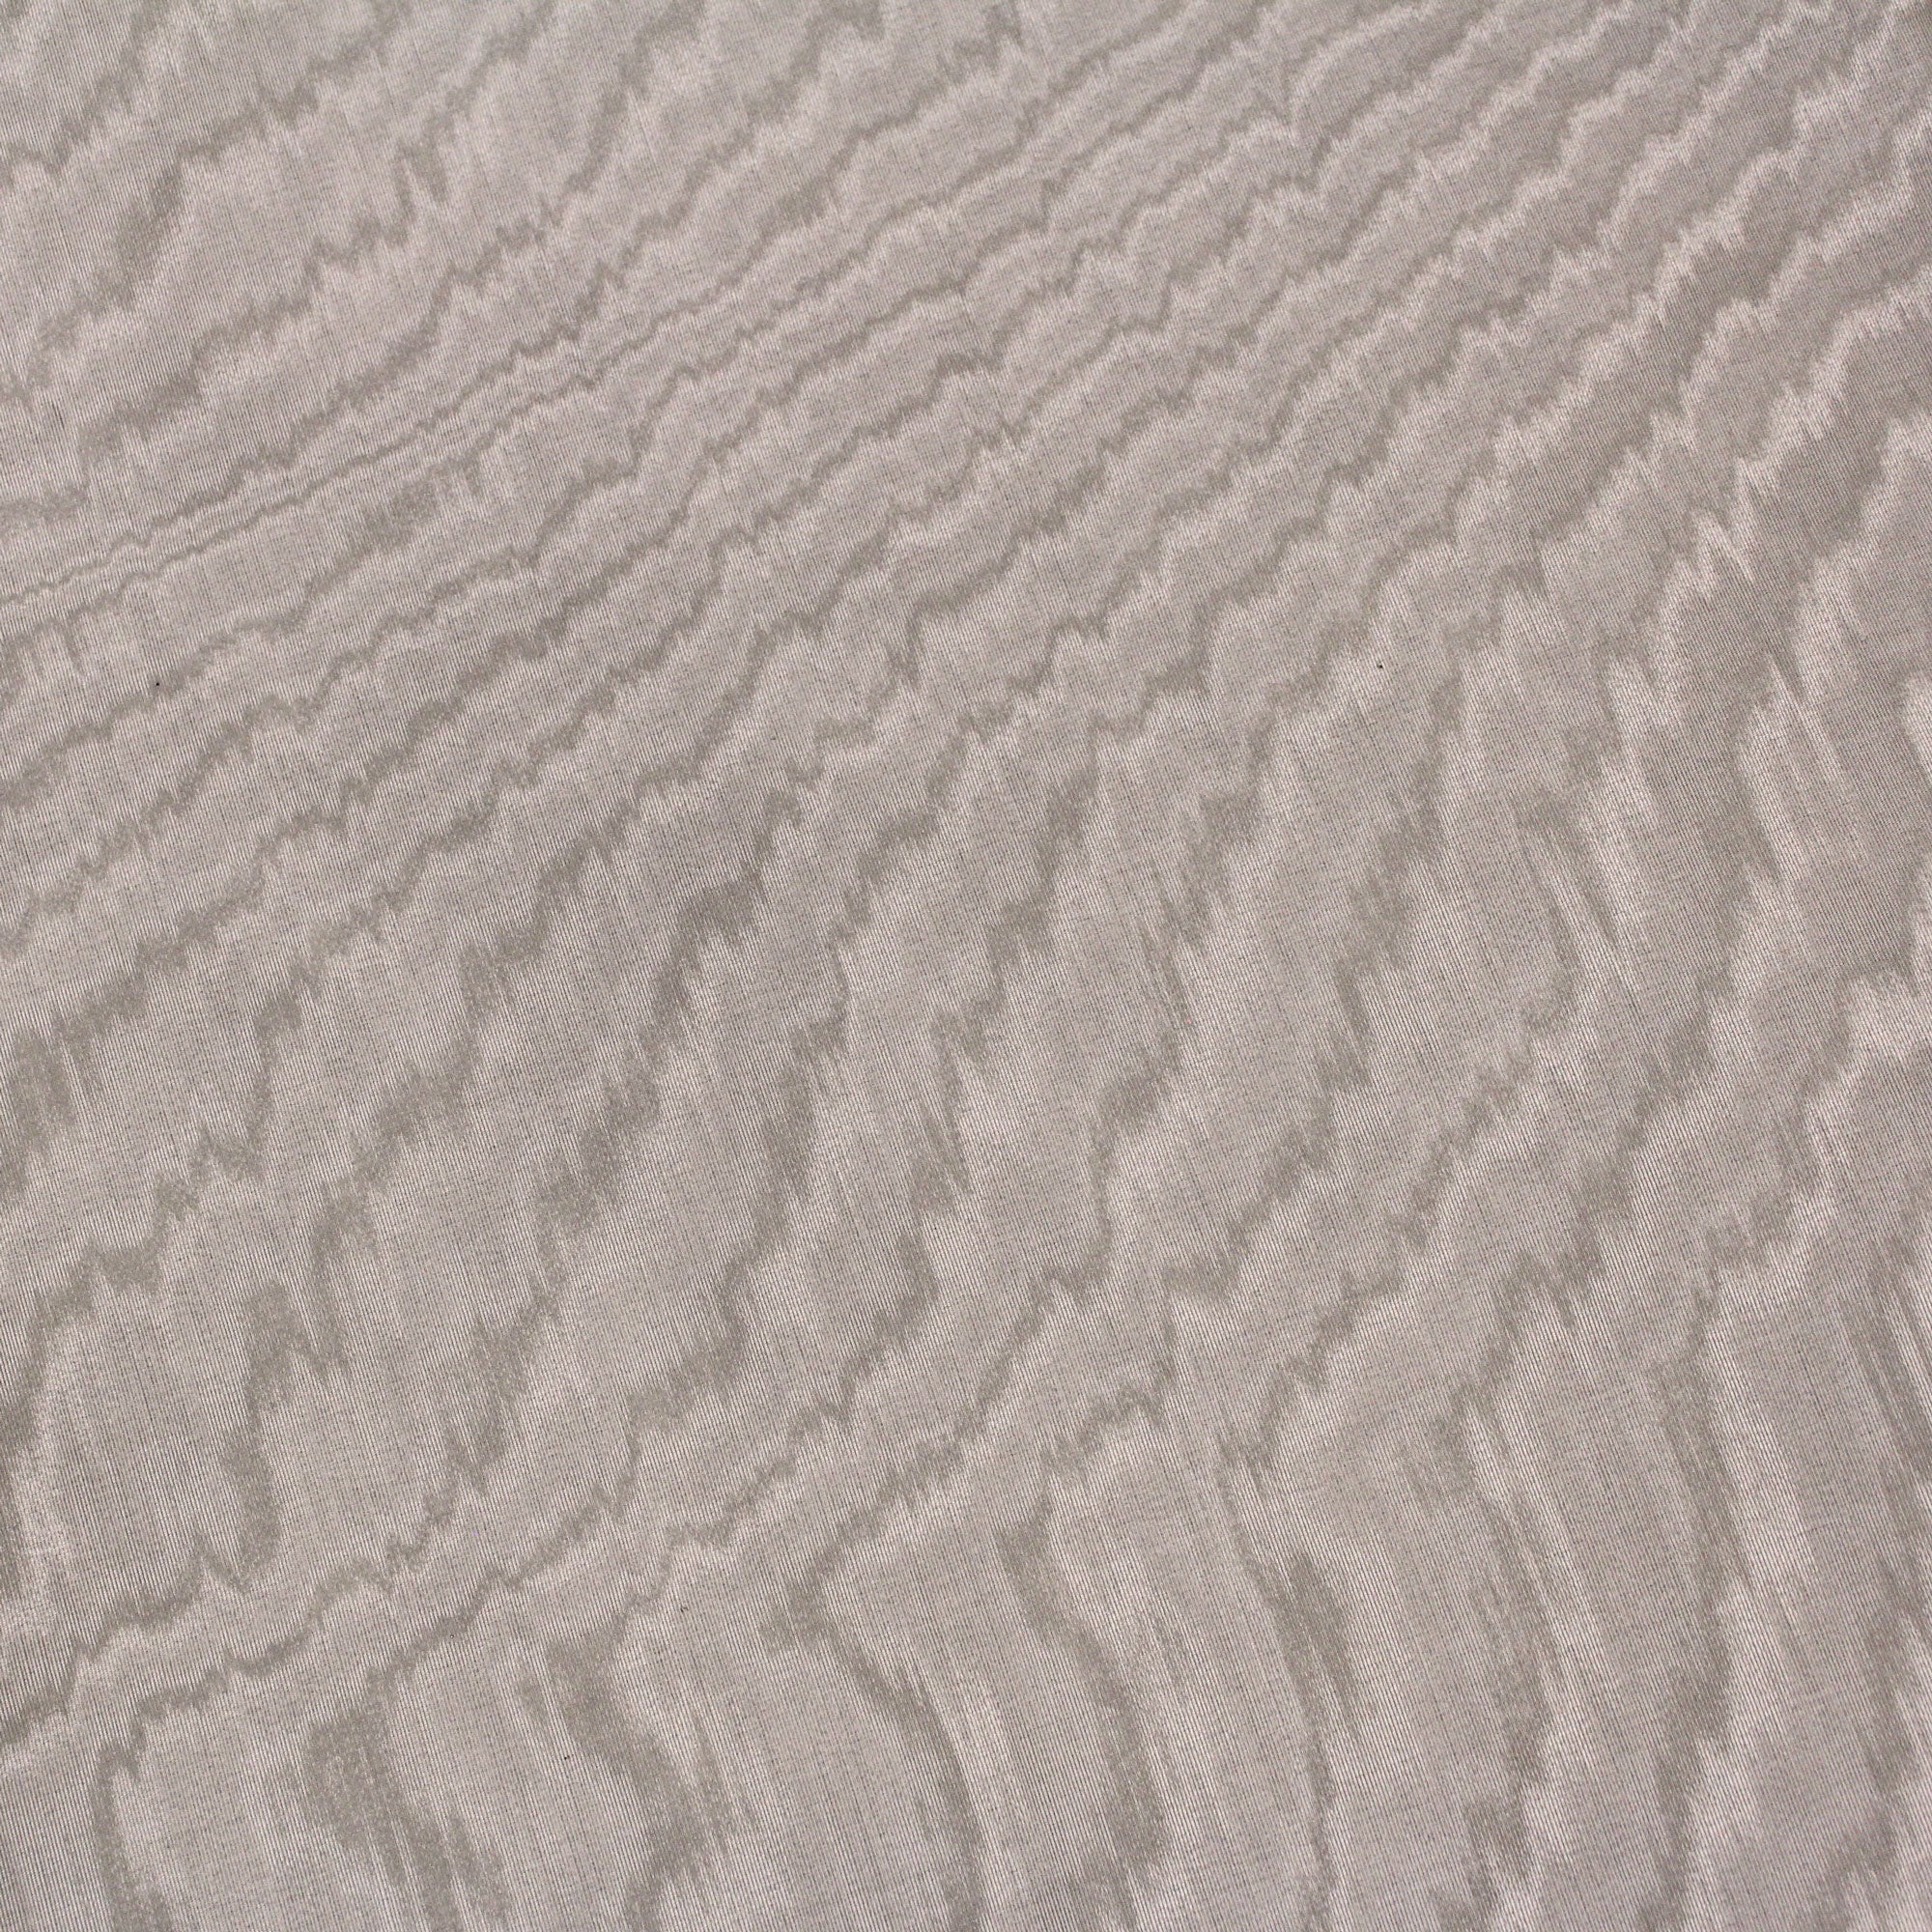 Moire en viscose et coton beige sable